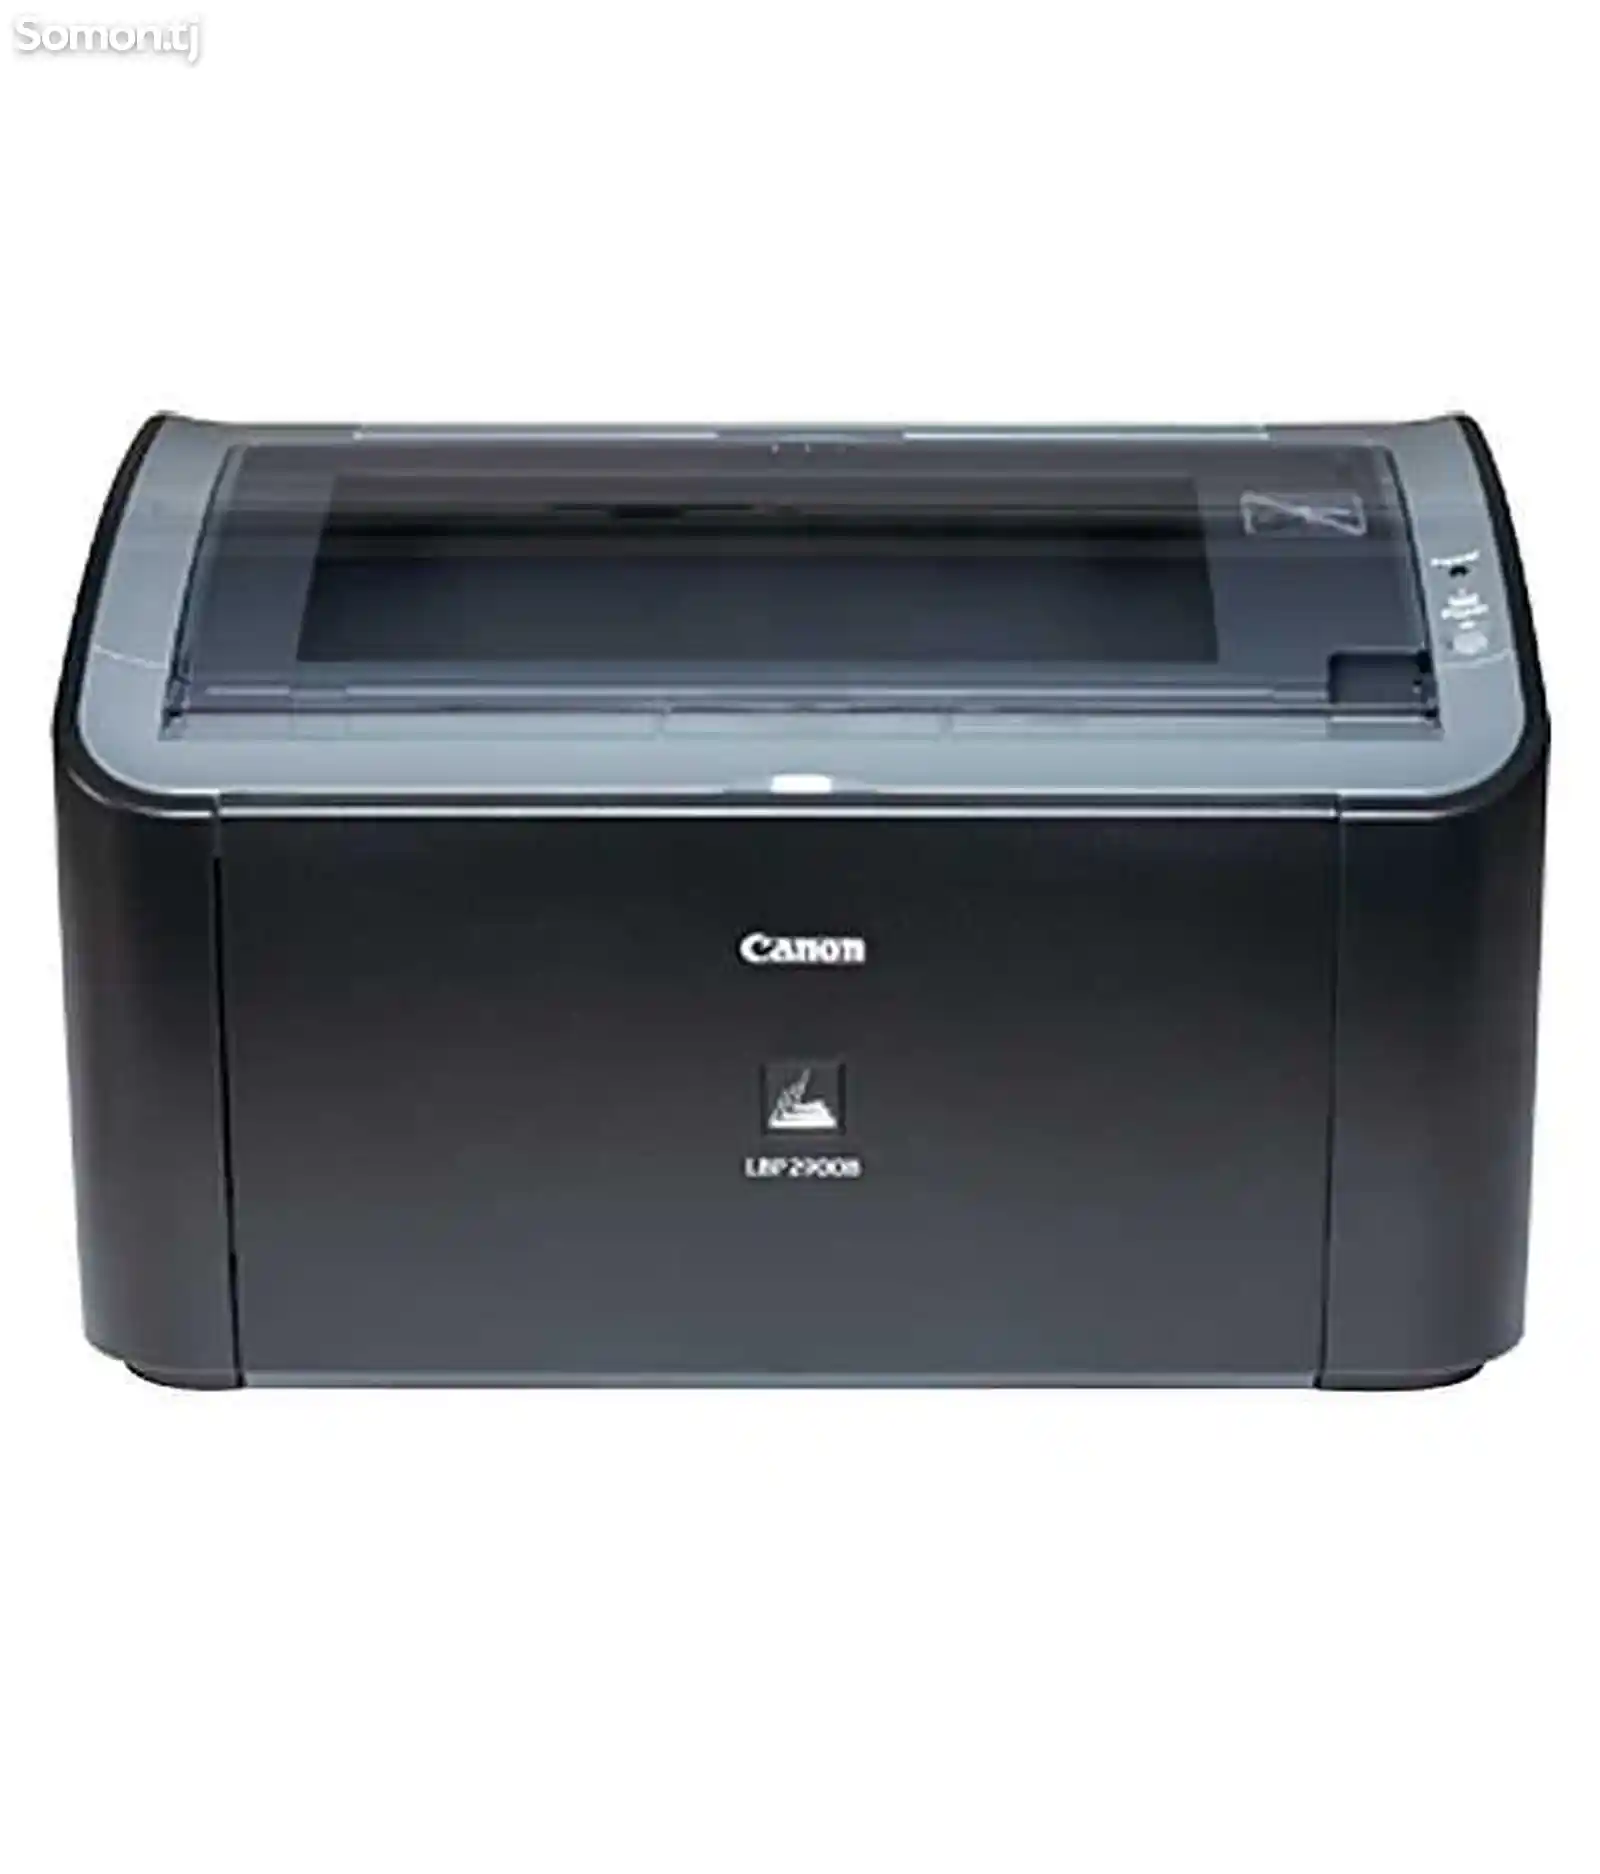 Принтер Canon Laser Shop LBP 2900B A4-2